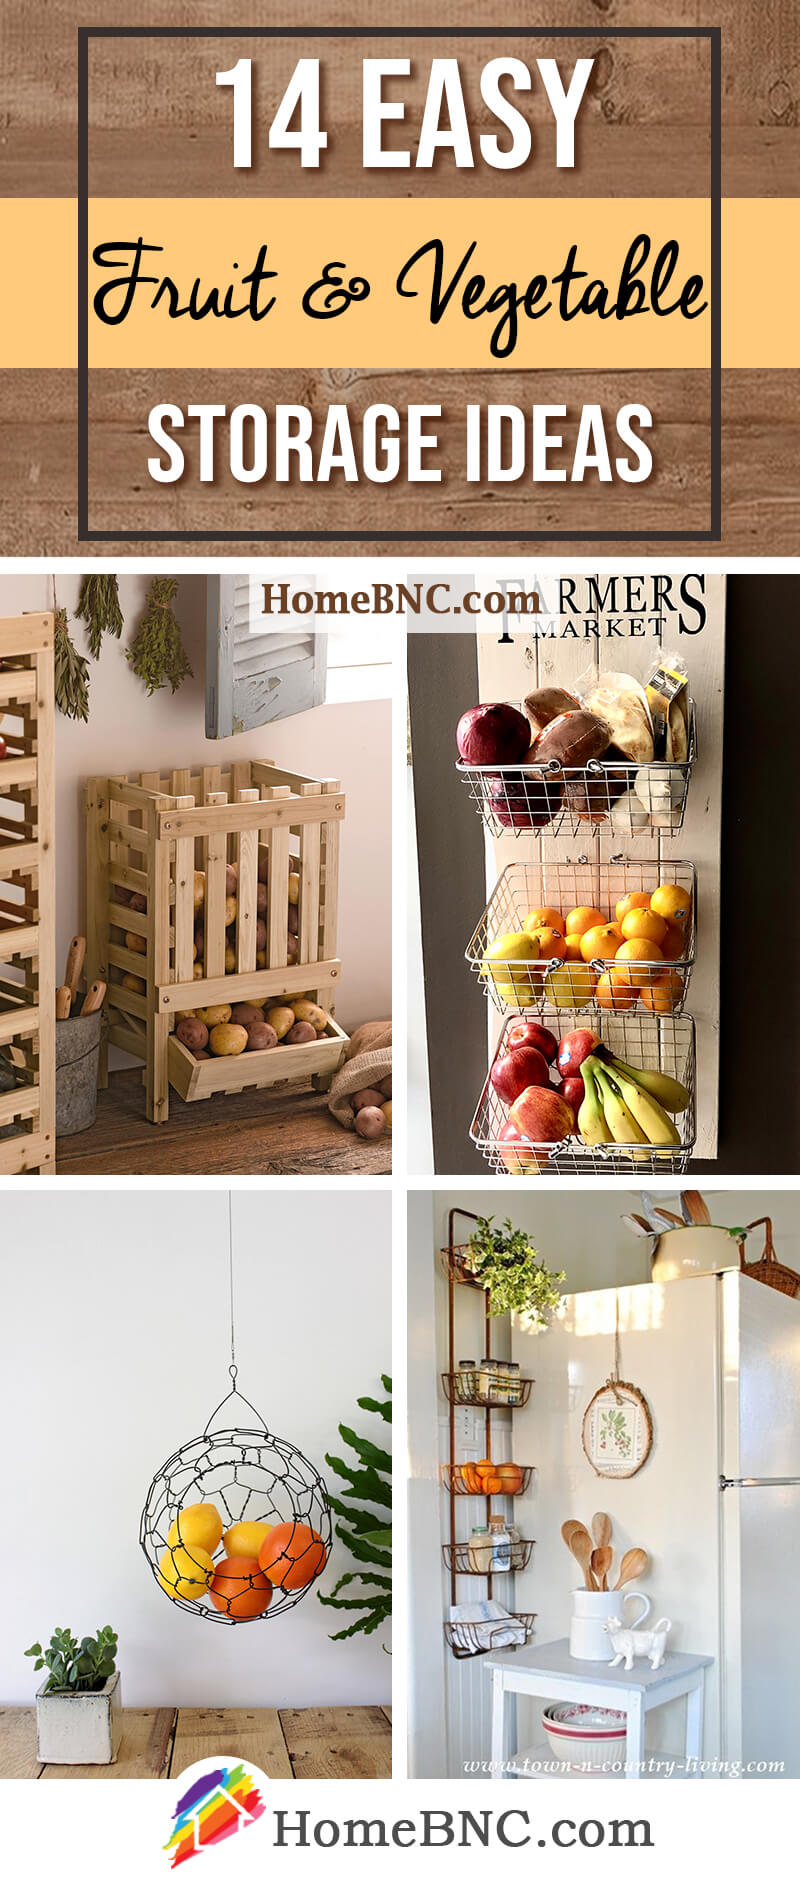 https://homebnc.com/homeimg/2020/10/fruit-and-vegetable-storage-ideas-pinterest-share-homebnc-v5.jpg